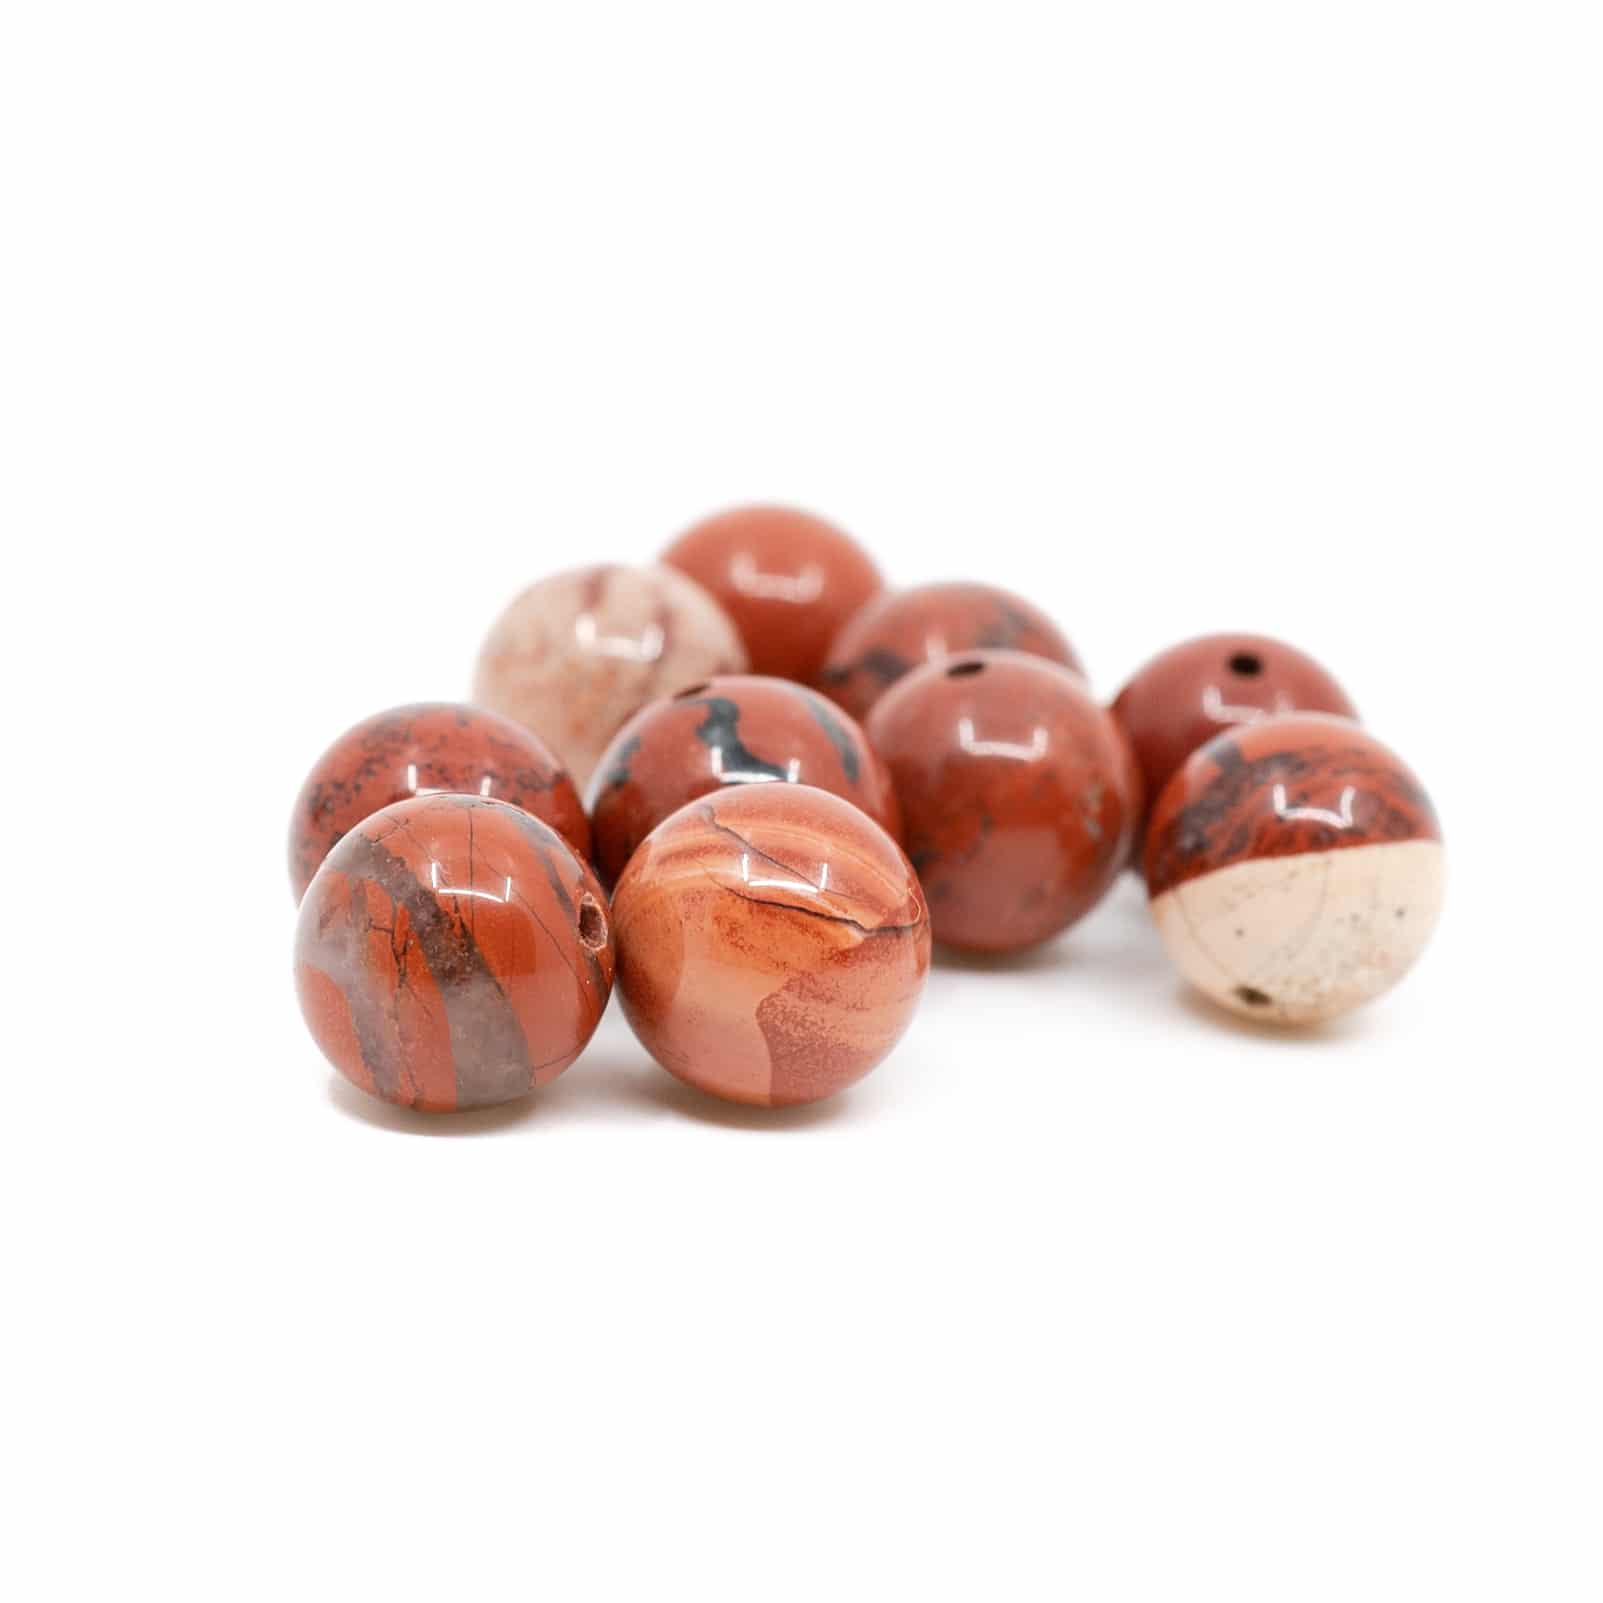 Edelstein Lose Perlen Roter Jaspis - 10 St-ck (10 mm)